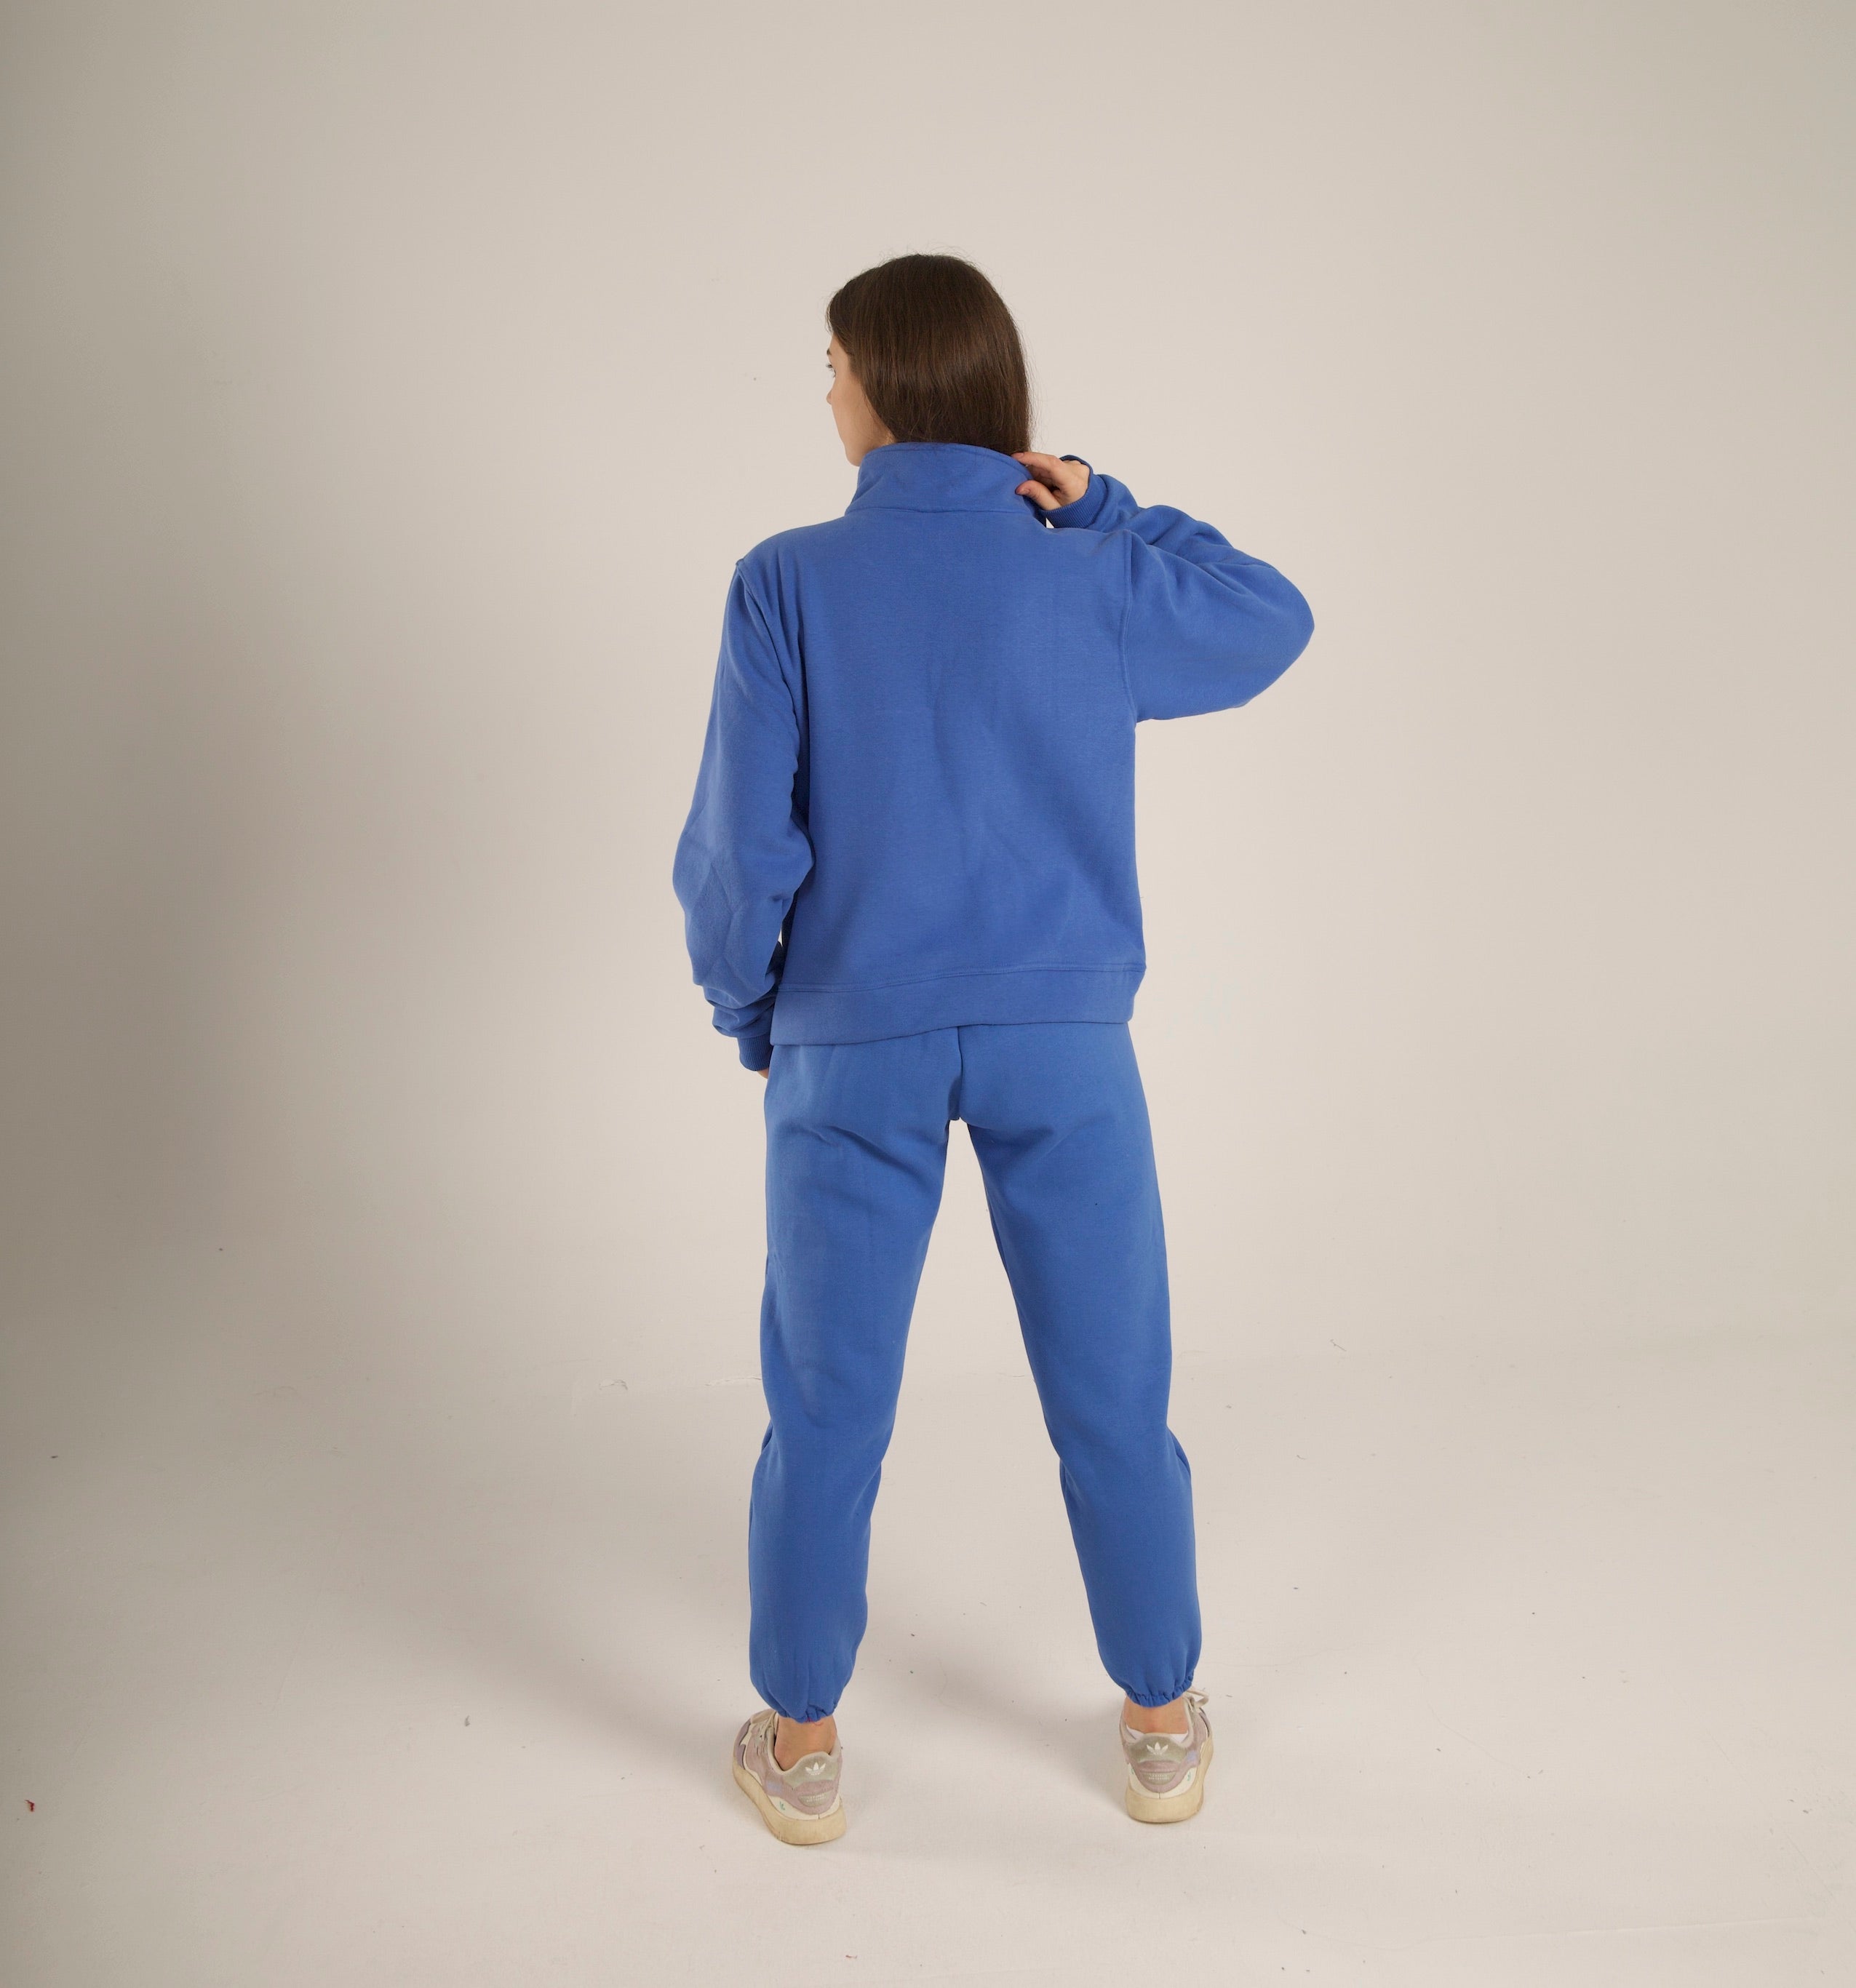 Snug set in blue (Sweatshirt + Pants)